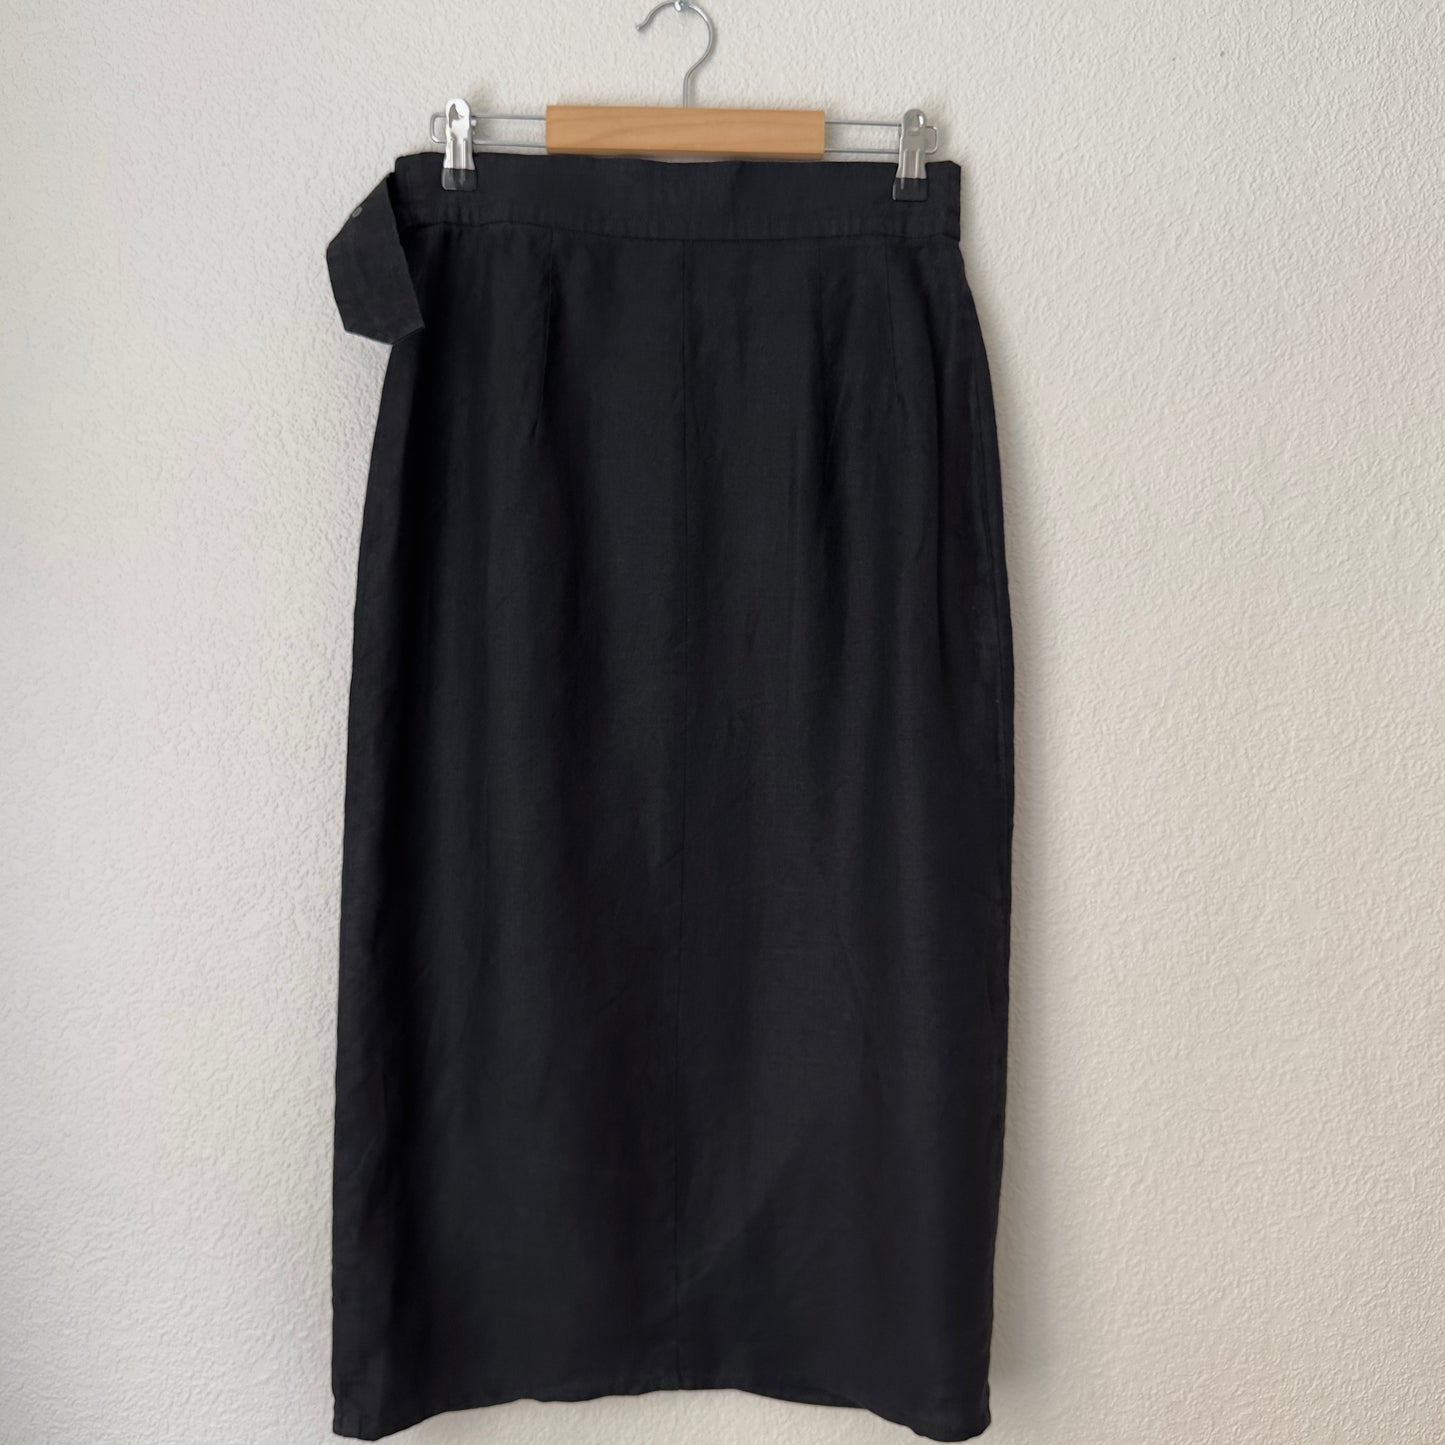 Vintage Black Linen Skirt